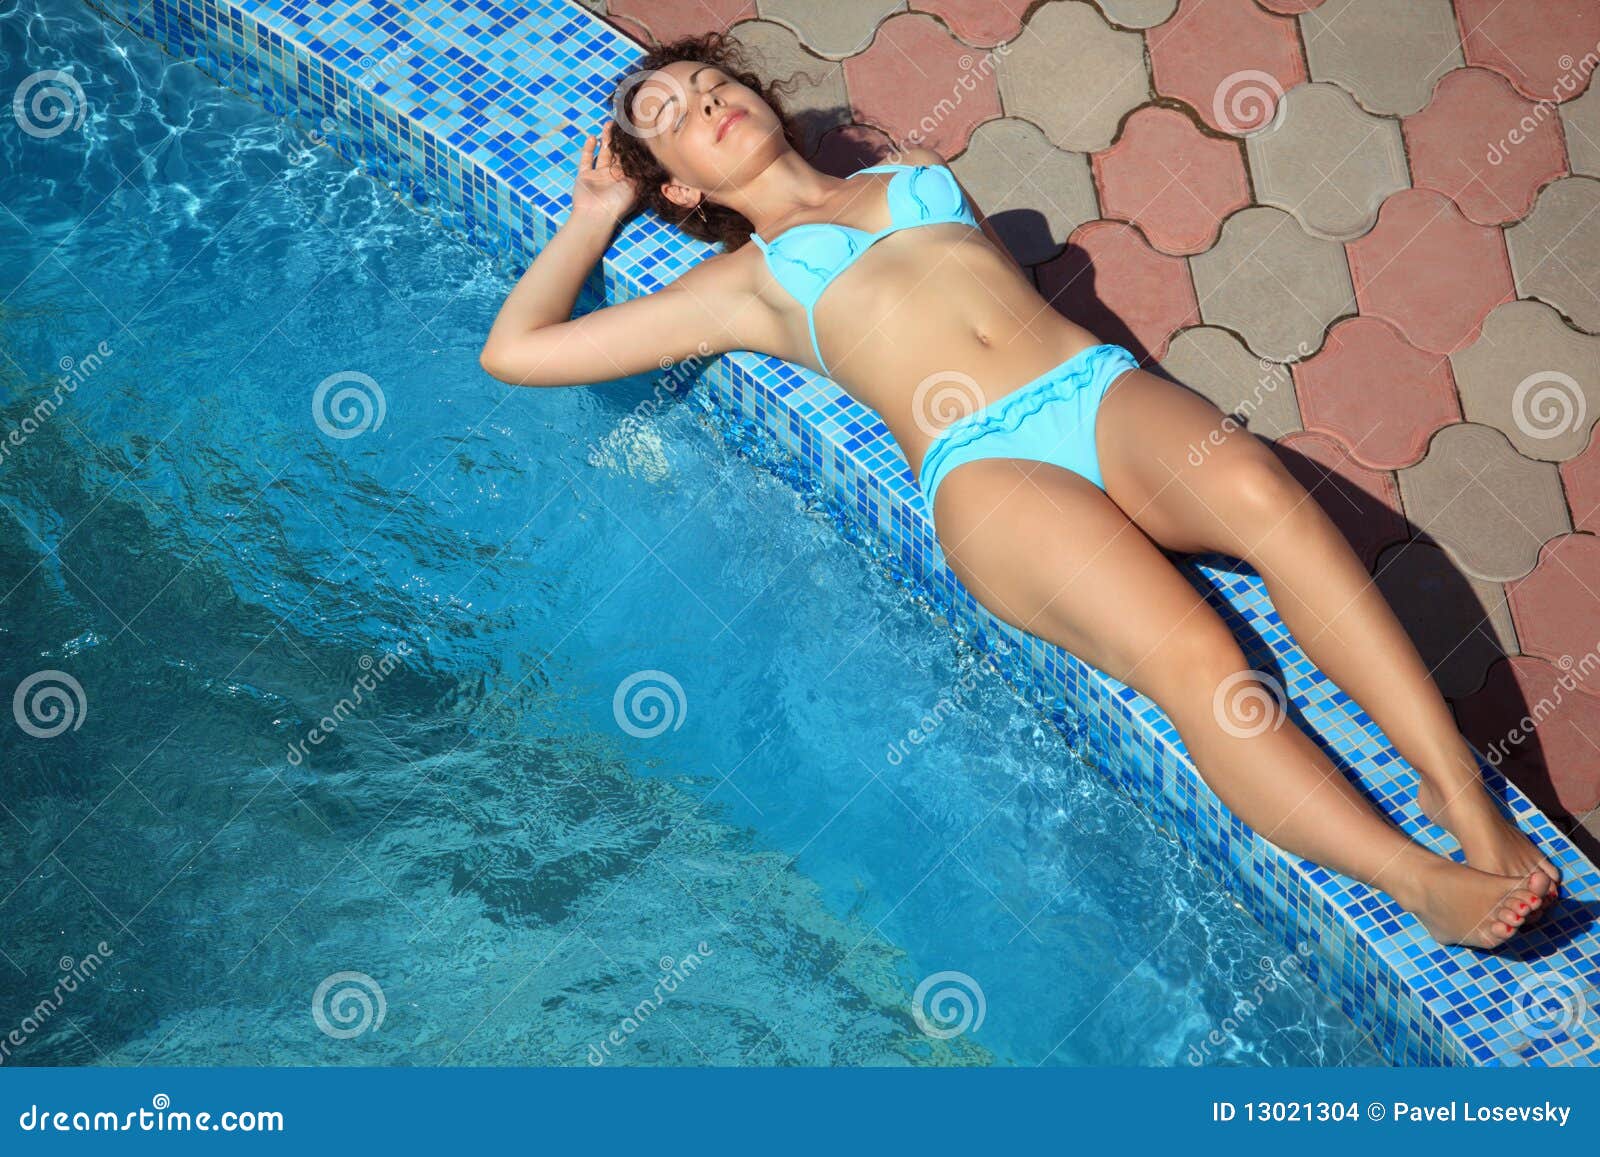 beautiful sexual woman lying near pool on resort